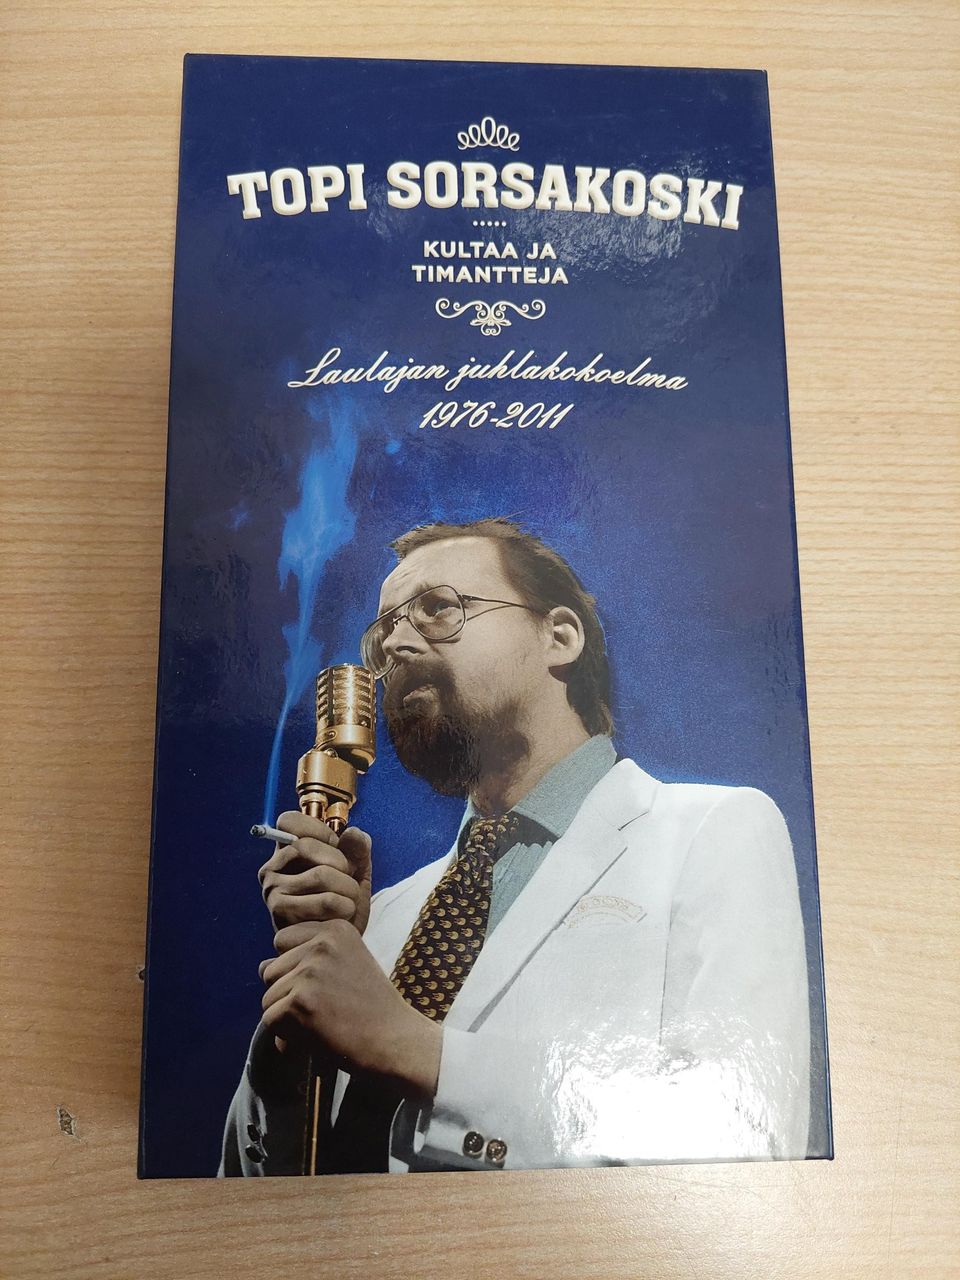 Topi Sorsakoski. 6 cd:n boxi.